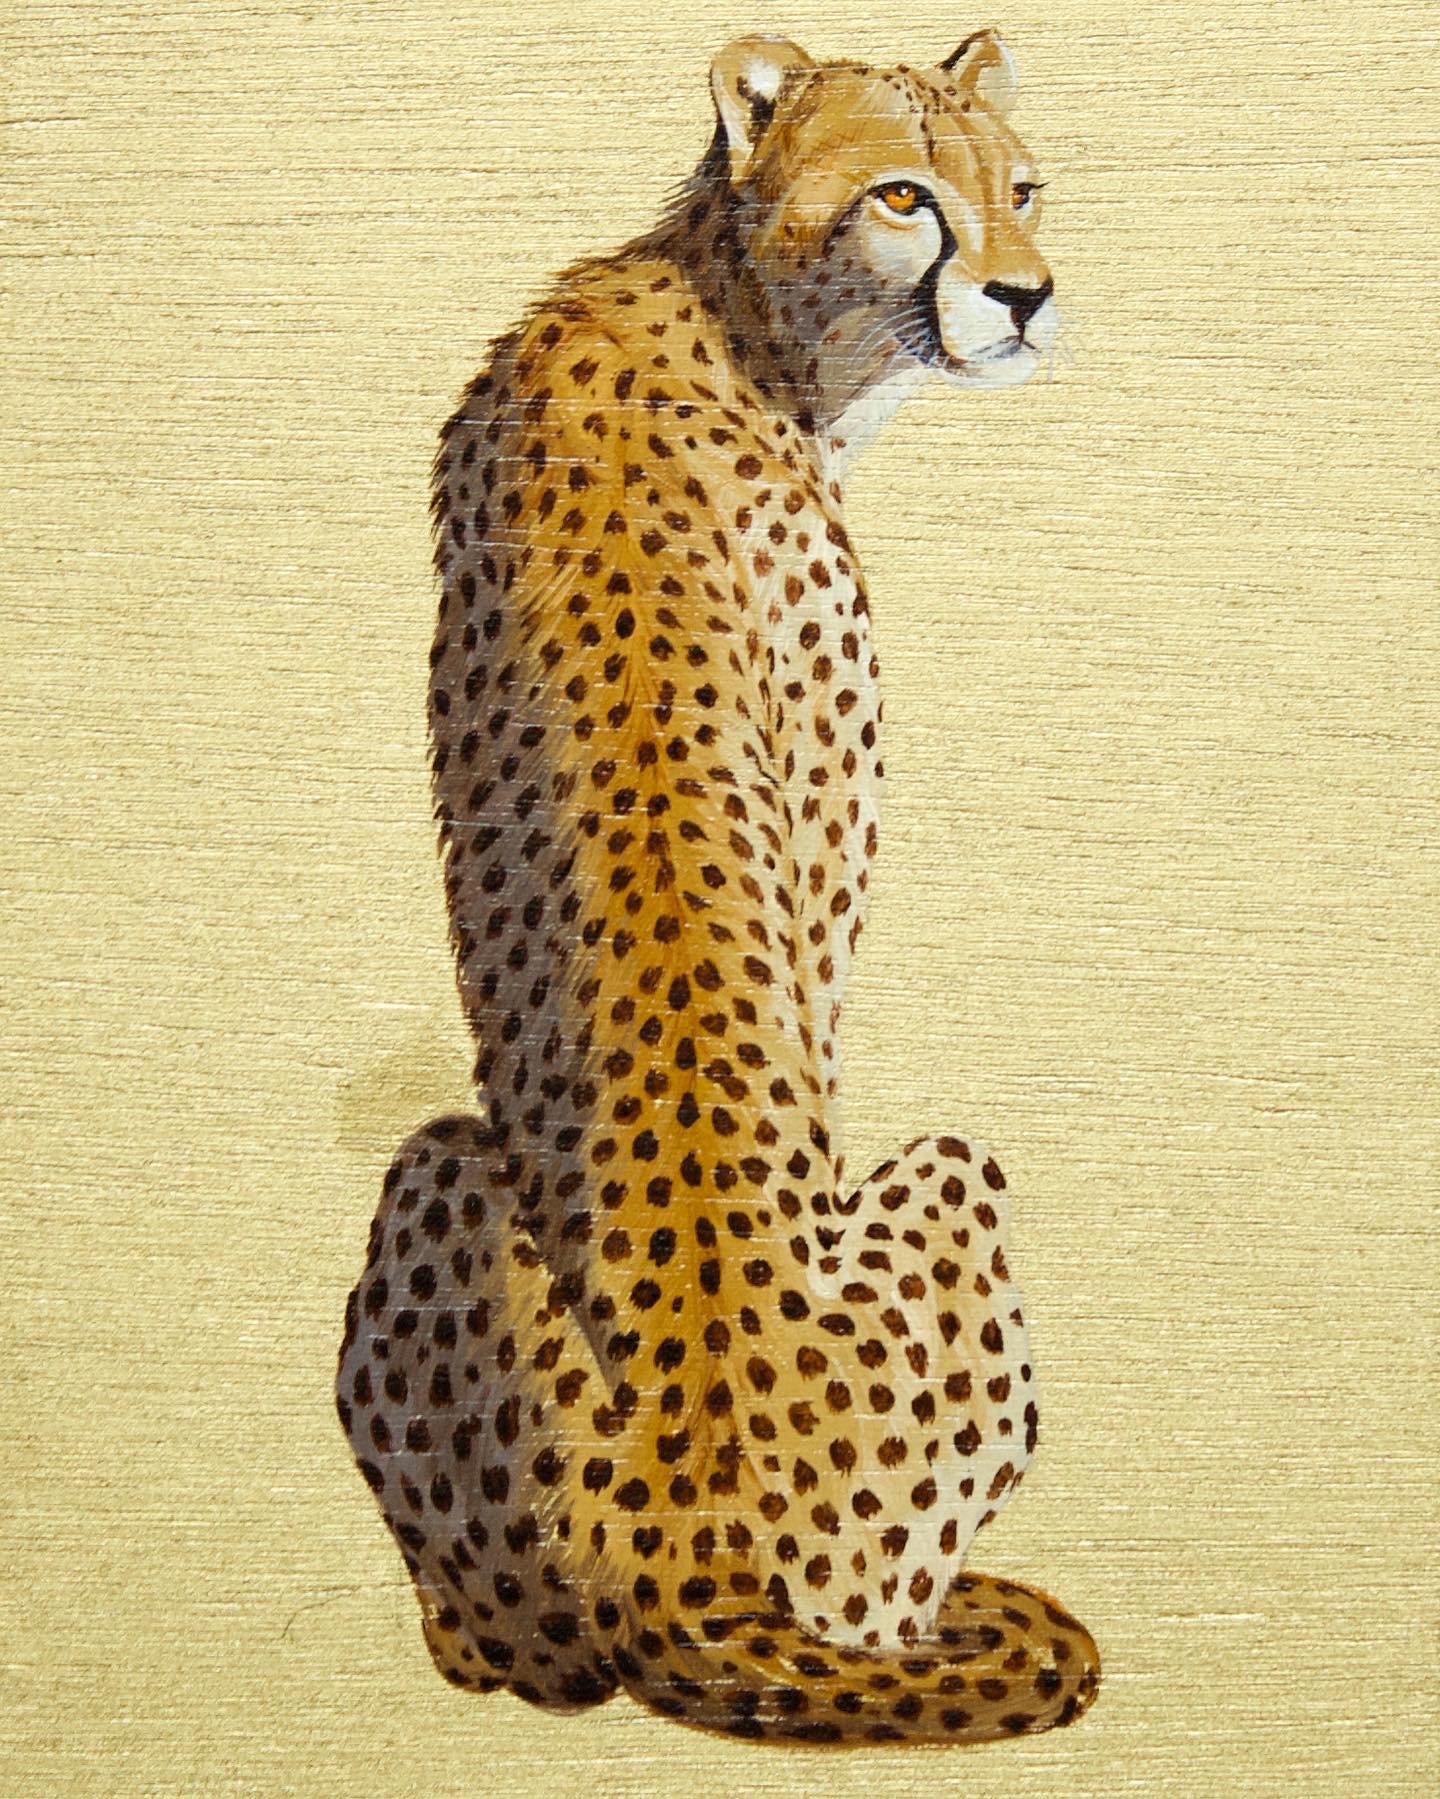 Big Cats: Cheetah